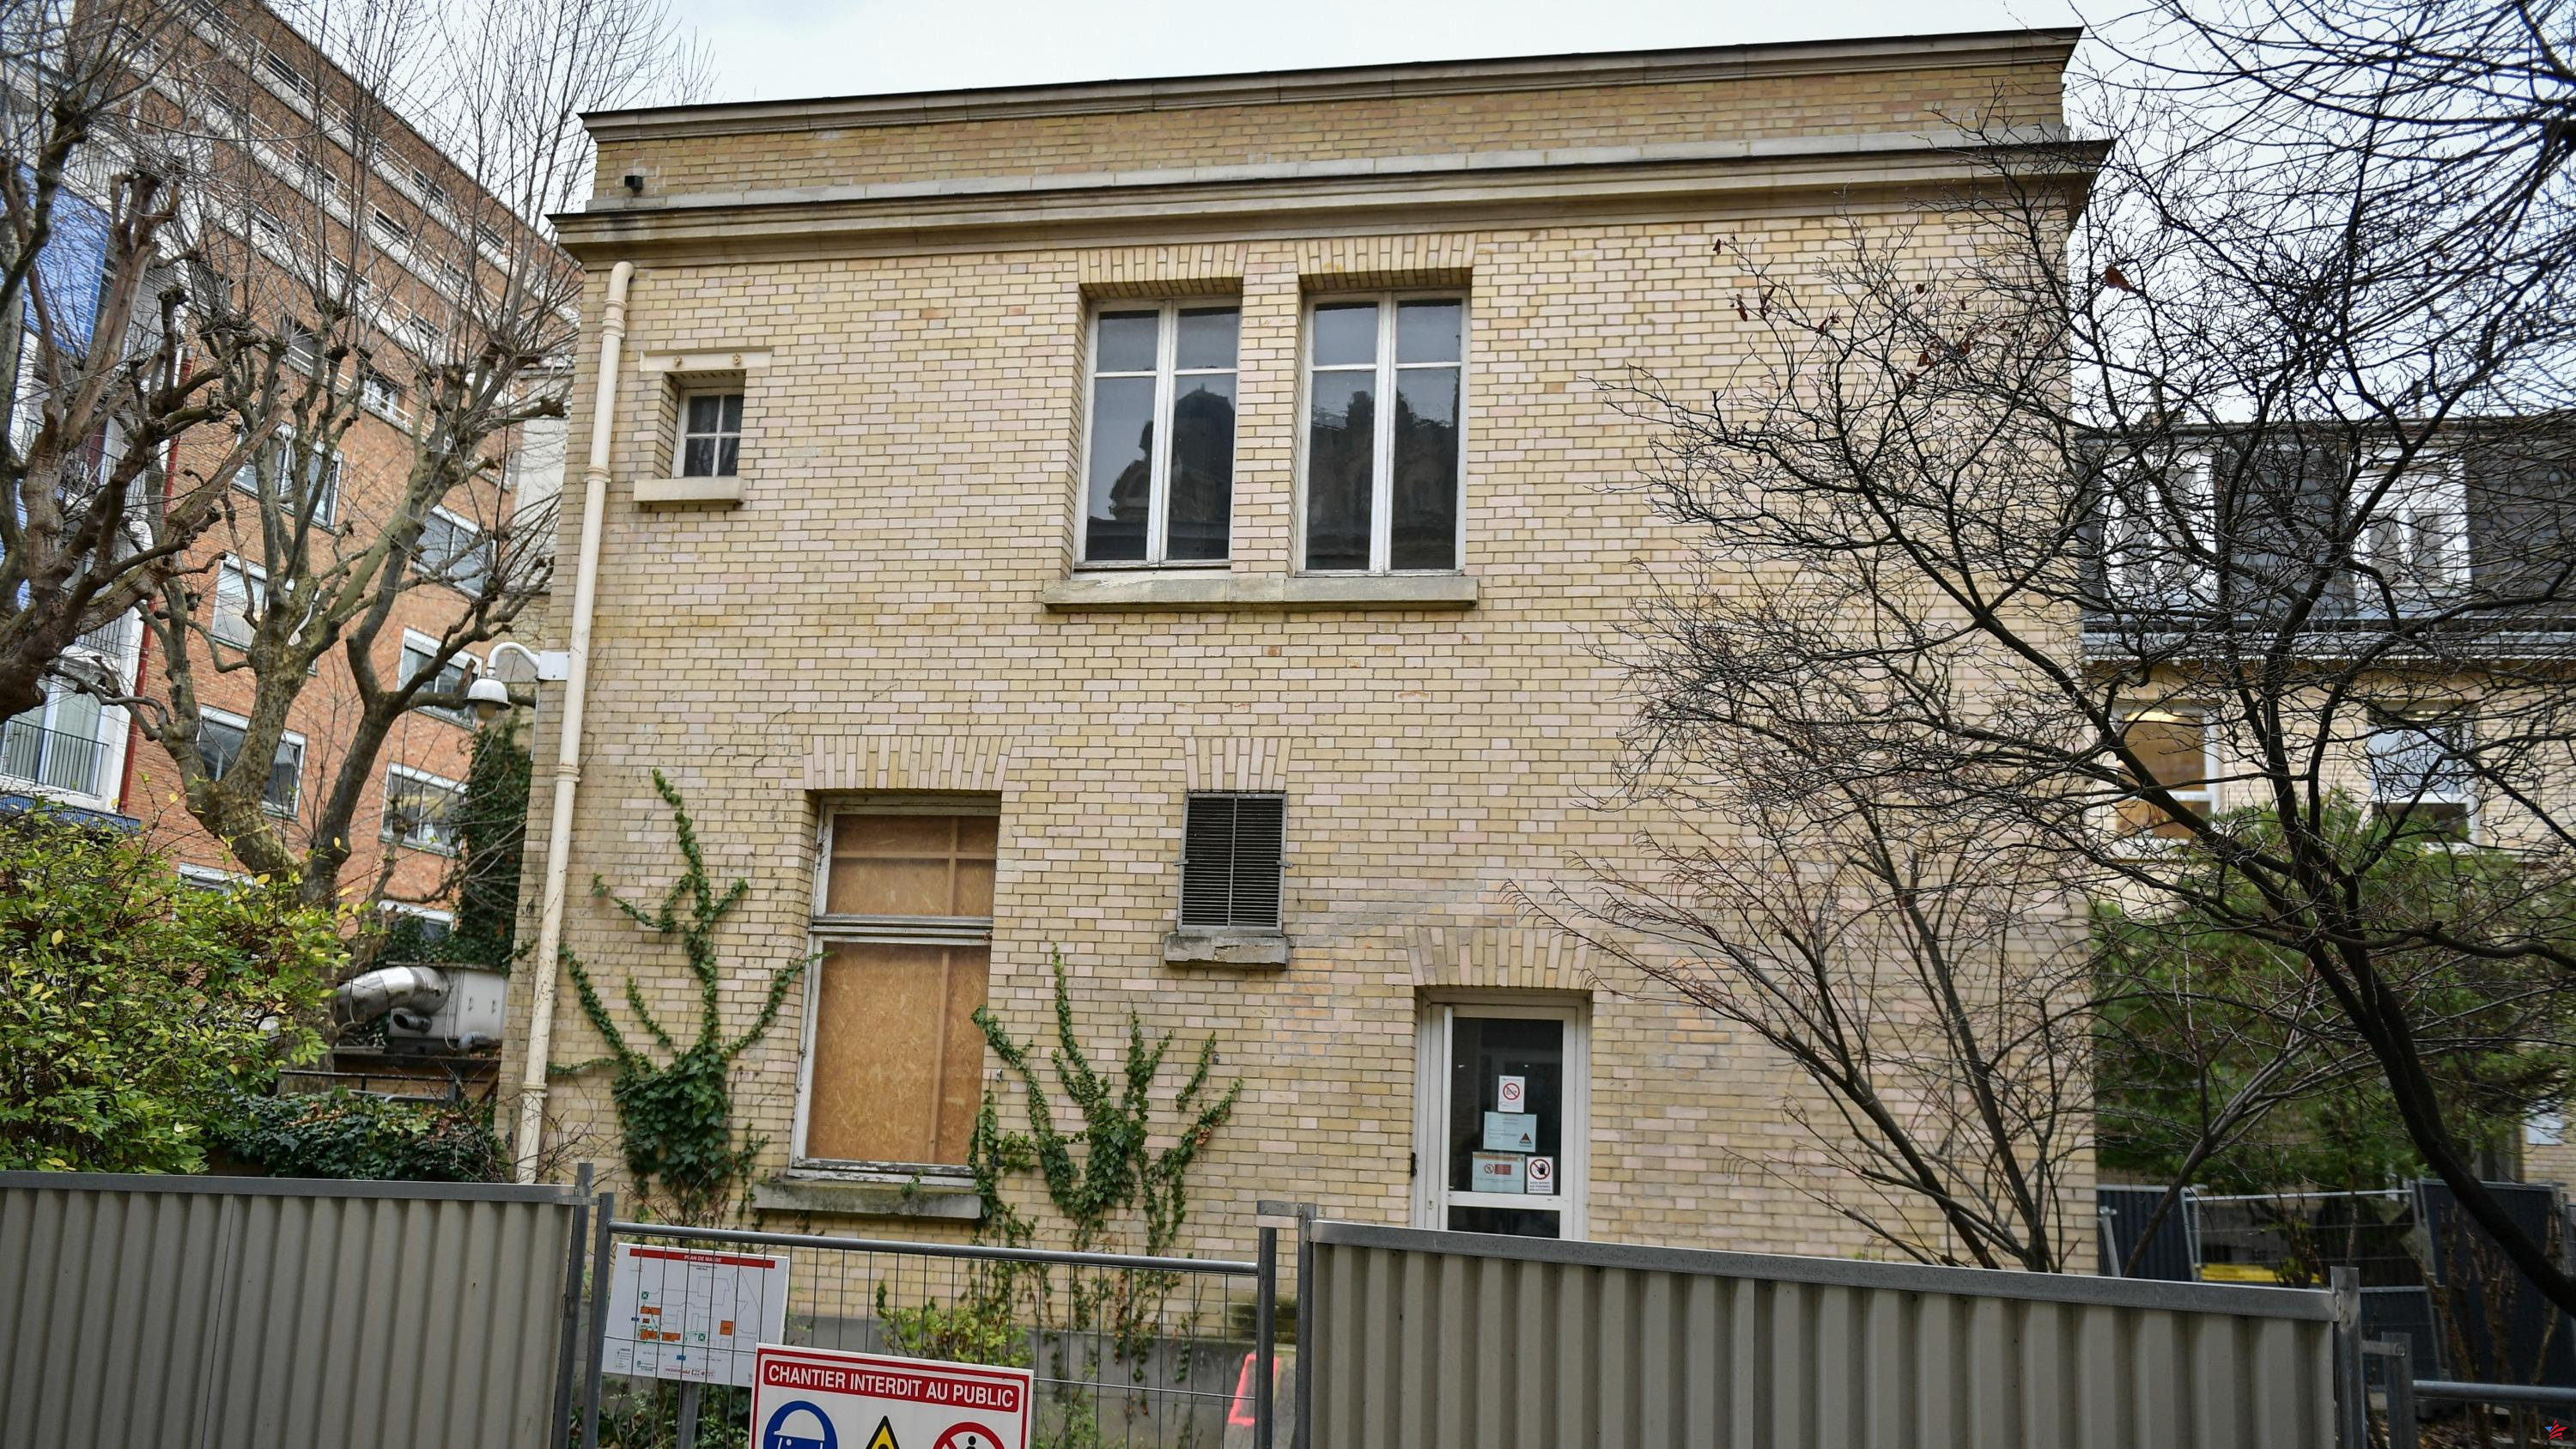 Amenazado de demolición, el pabellón de las Fuentes de Marie Curie será “desmantelado y reensamblado” más lejos